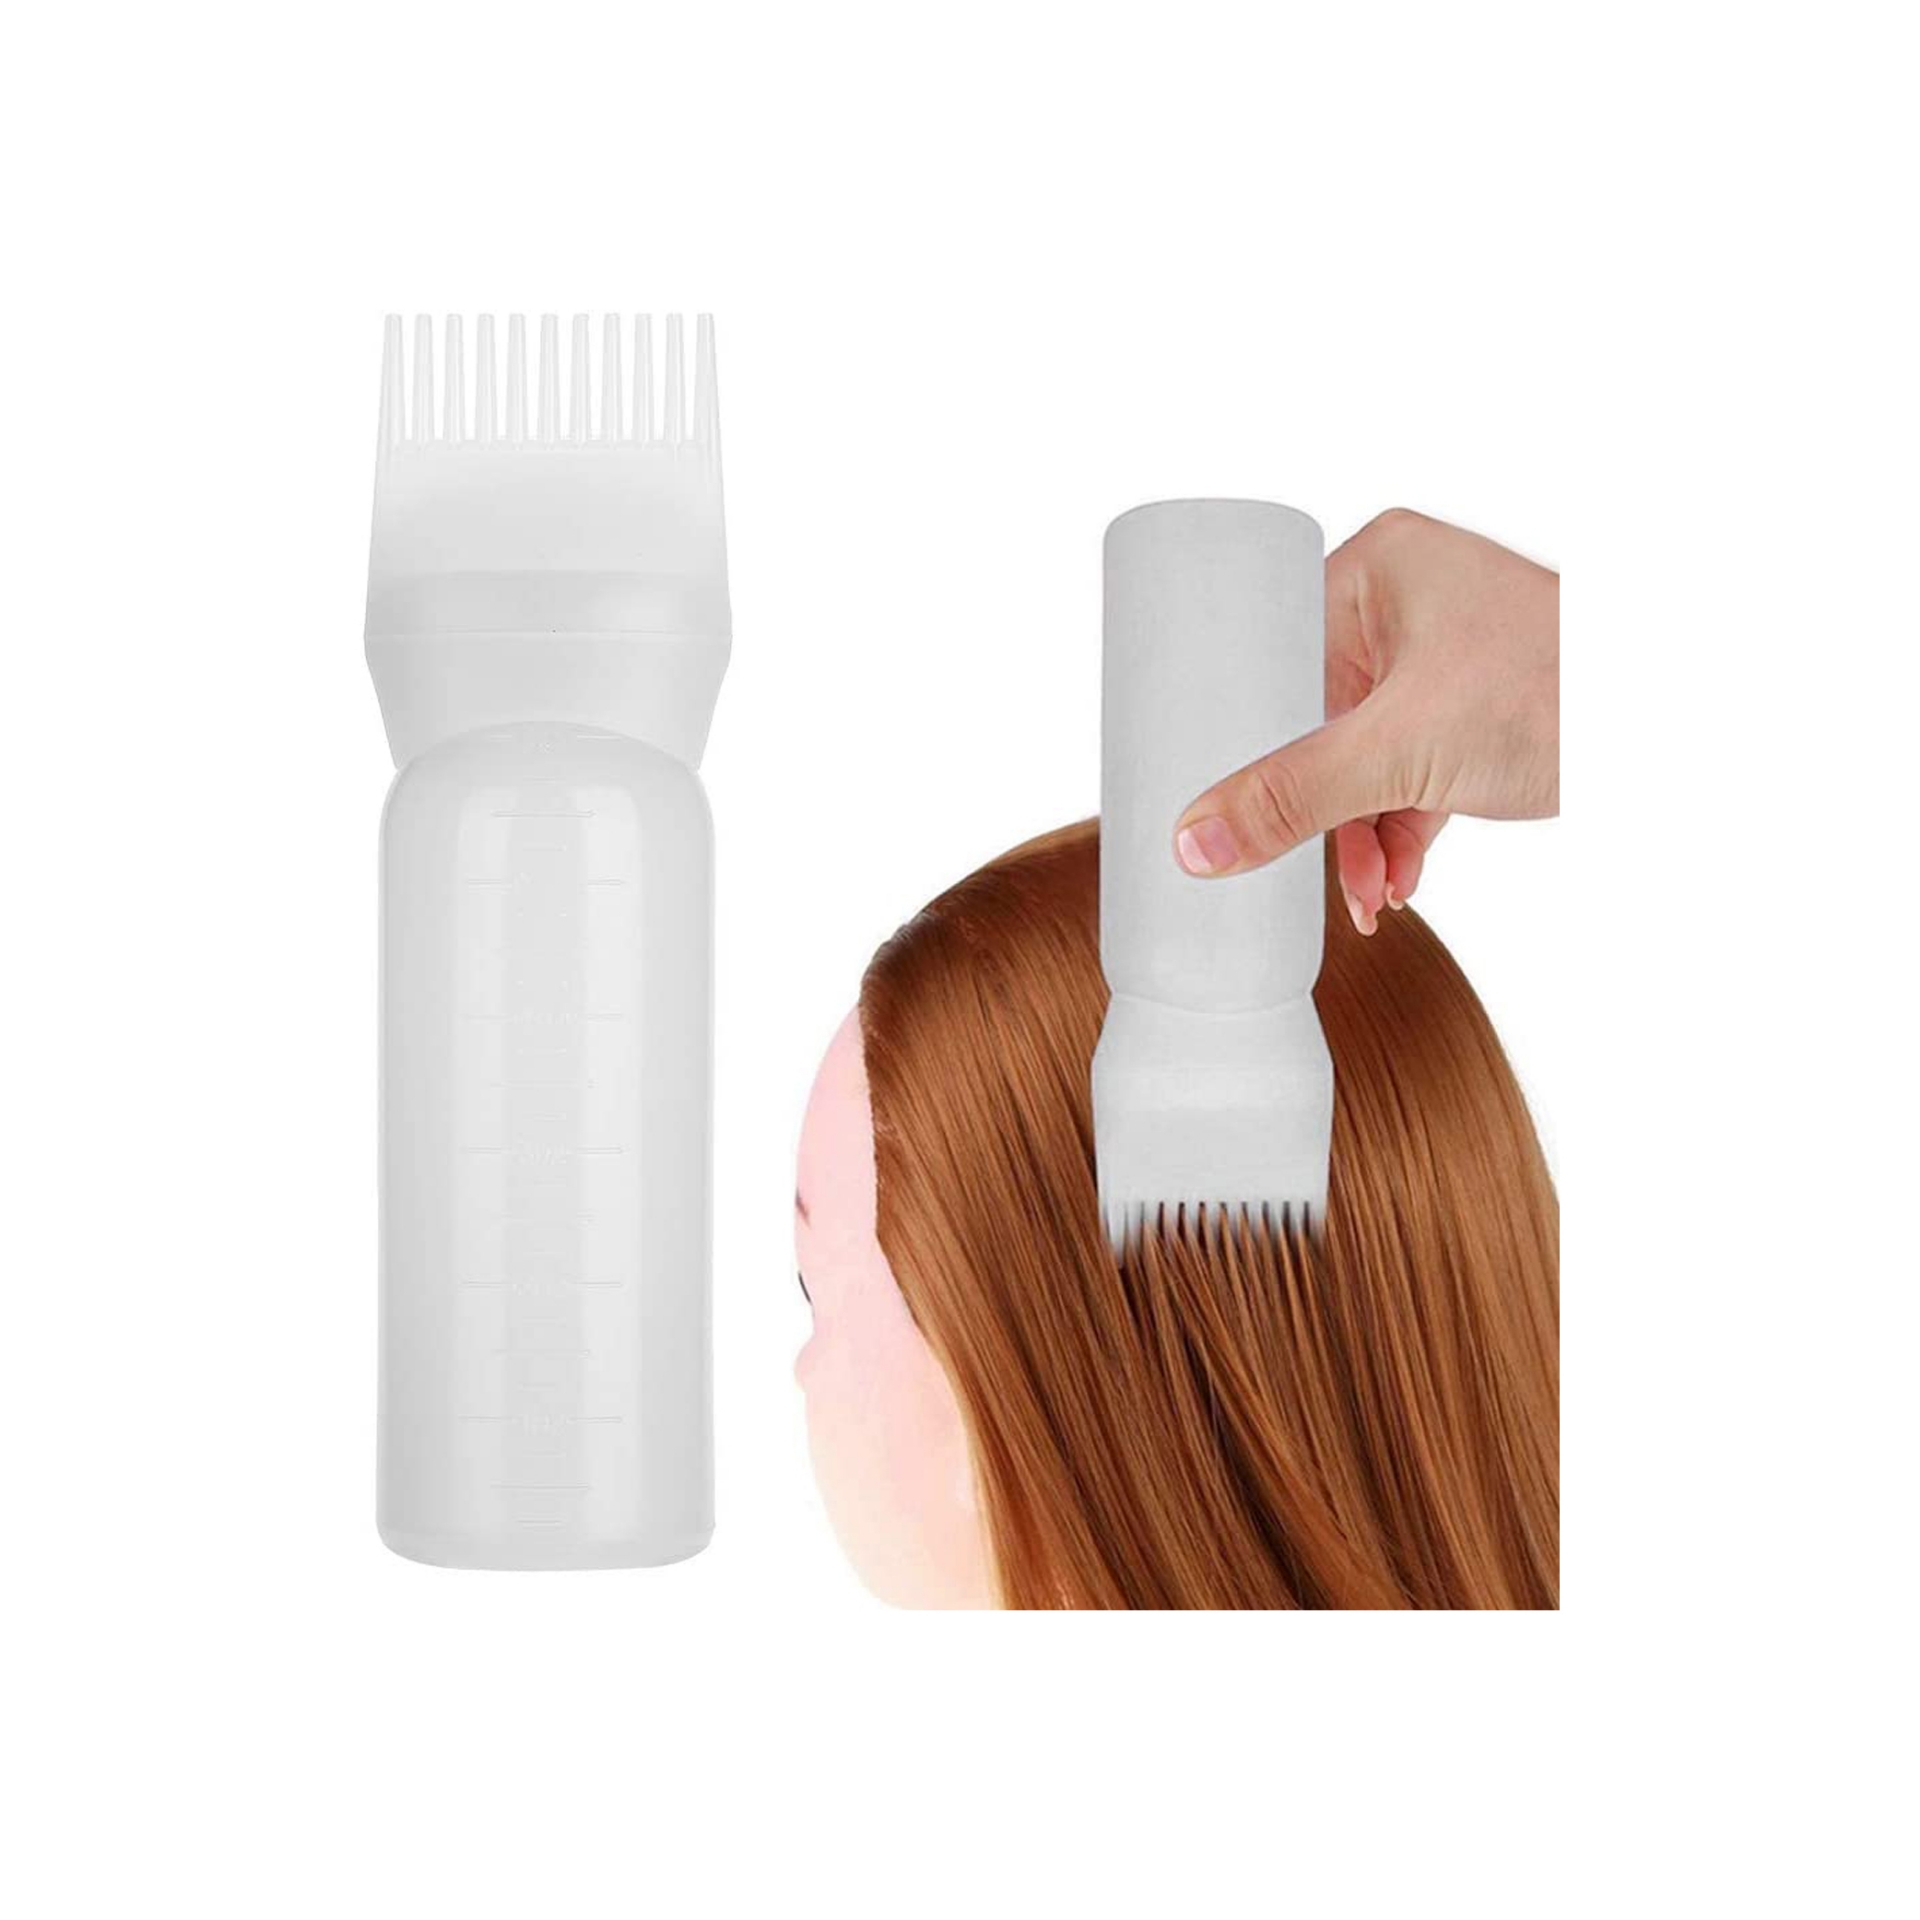 فرشاة زجاجات صبغ الشعر بثلاثة الوان، اداة توزيع صبغة الشعر، مناسبة للاستخدام الاحترافي او للاستخدام المنزلي (ابيض)